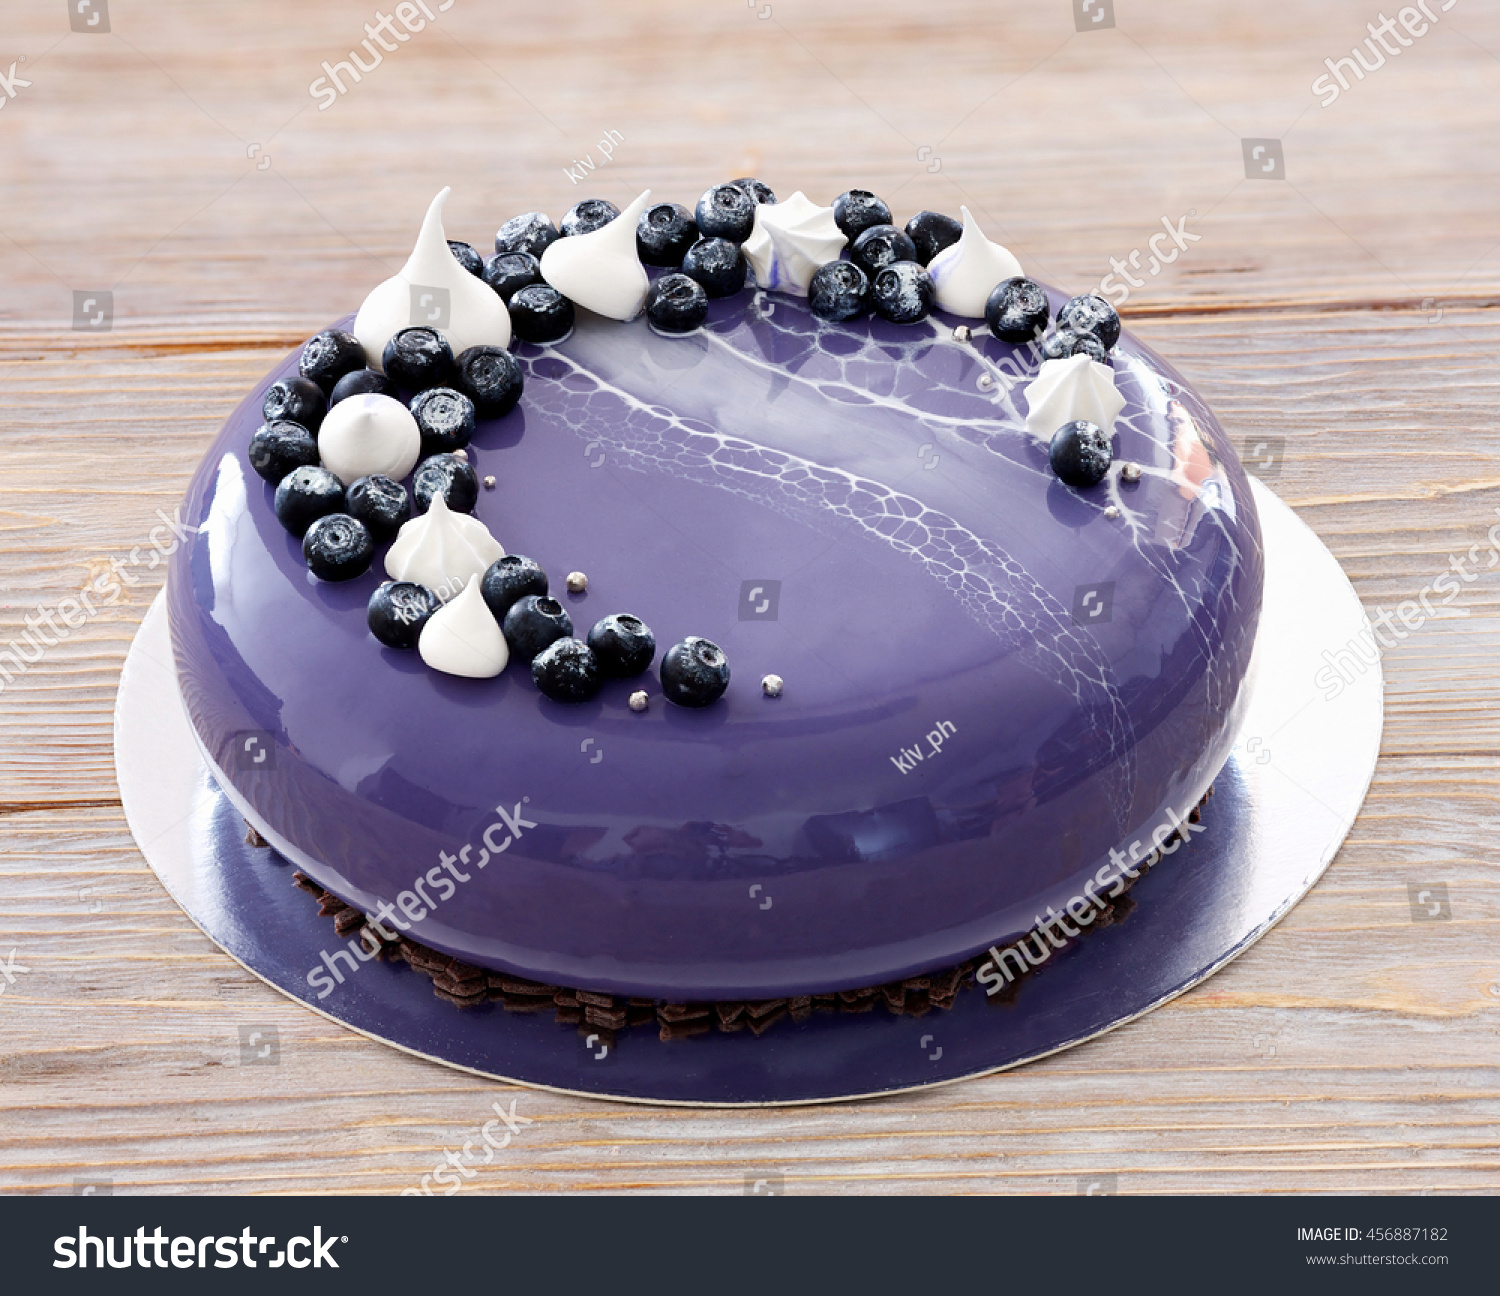 Lemon-Blueberry Bundt Cake | My Baking Addiction